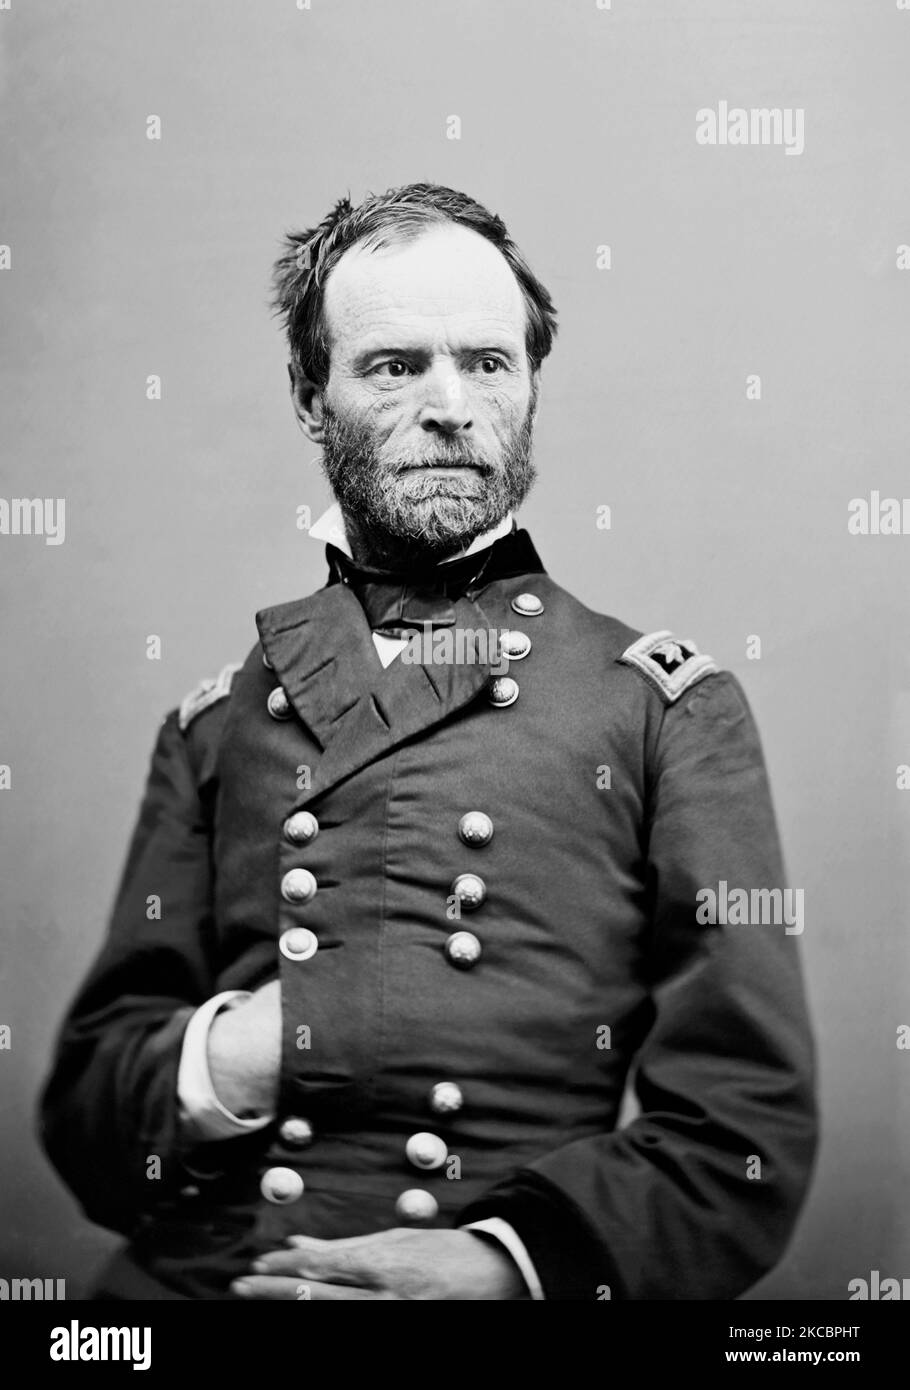 Retrato de William Tecumseh Sherman, quien sirvió como general en el Ejército de la Unión. Foto de stock